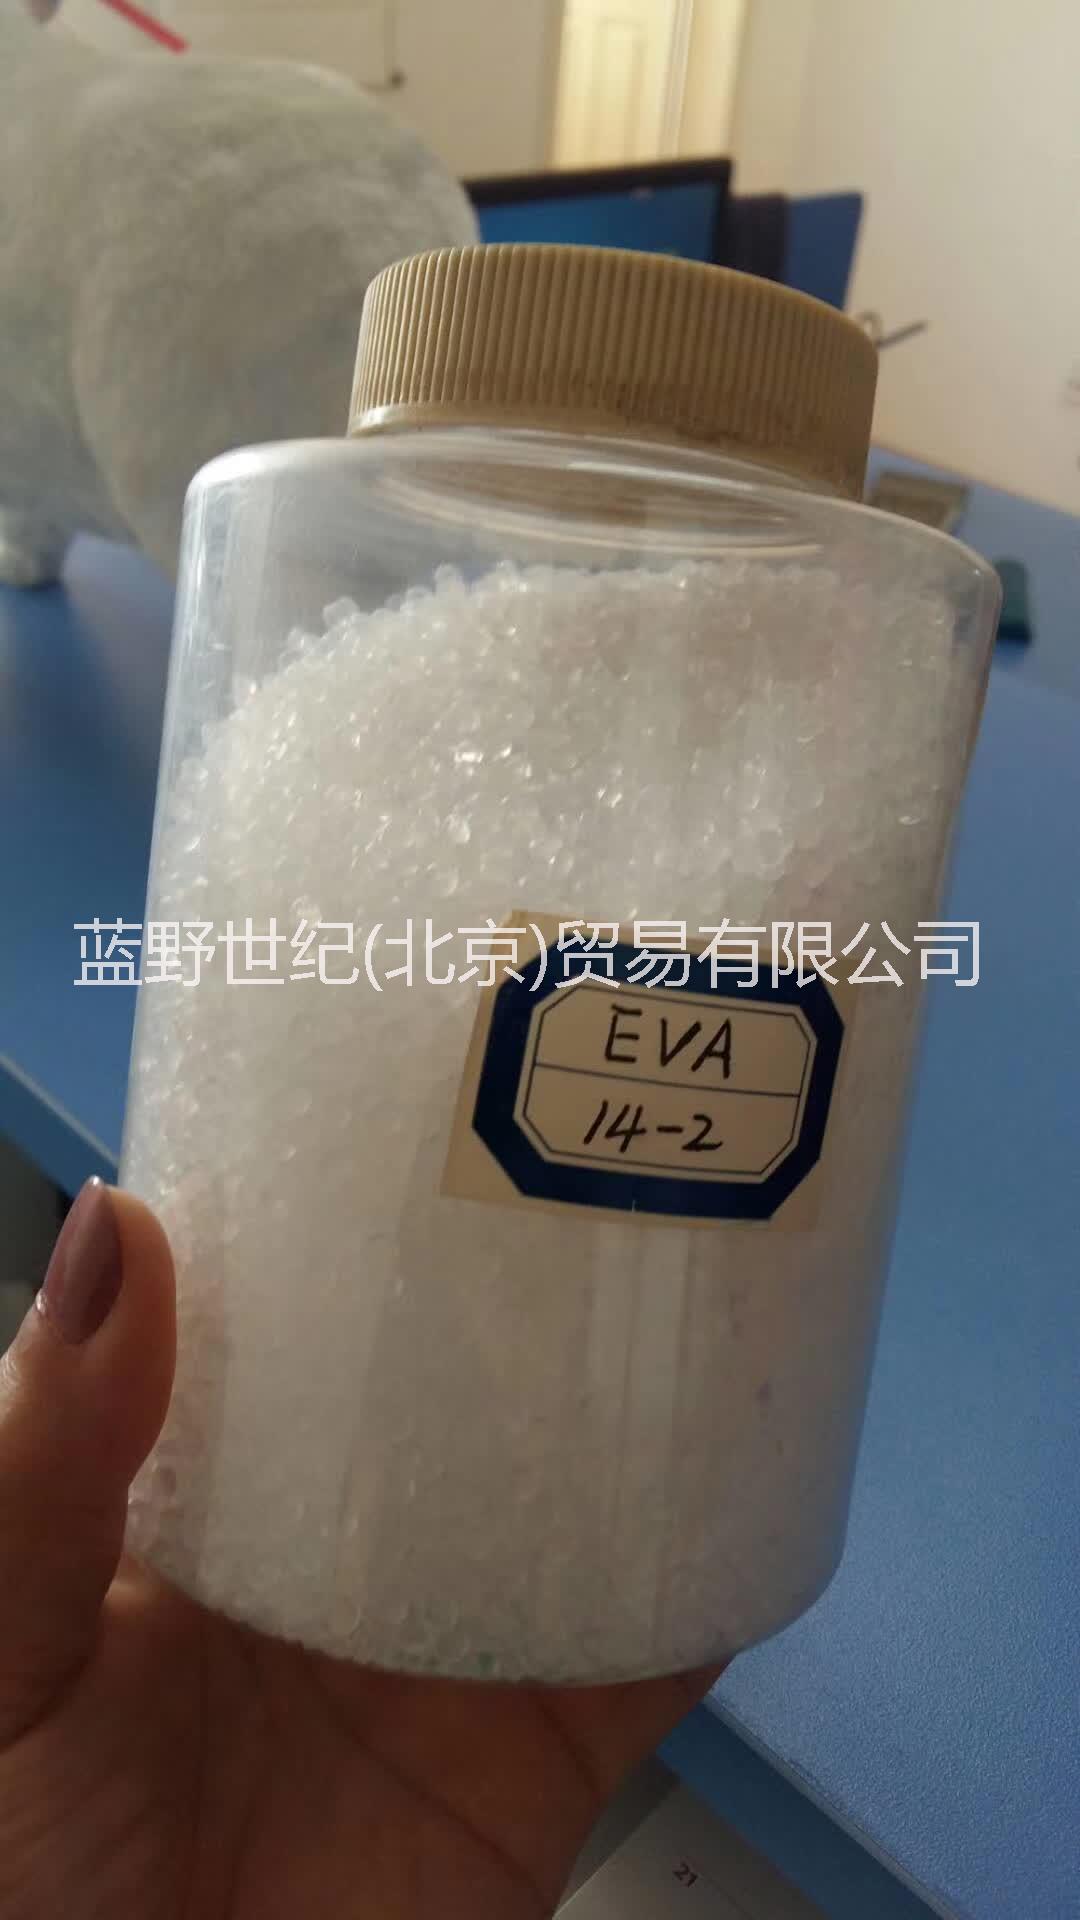 EVA 14-2 北京有机 透明级 薄膜级 发泡级 吹膜级 注塑成型 用于途膜 需求EVA 14-2 北京有机